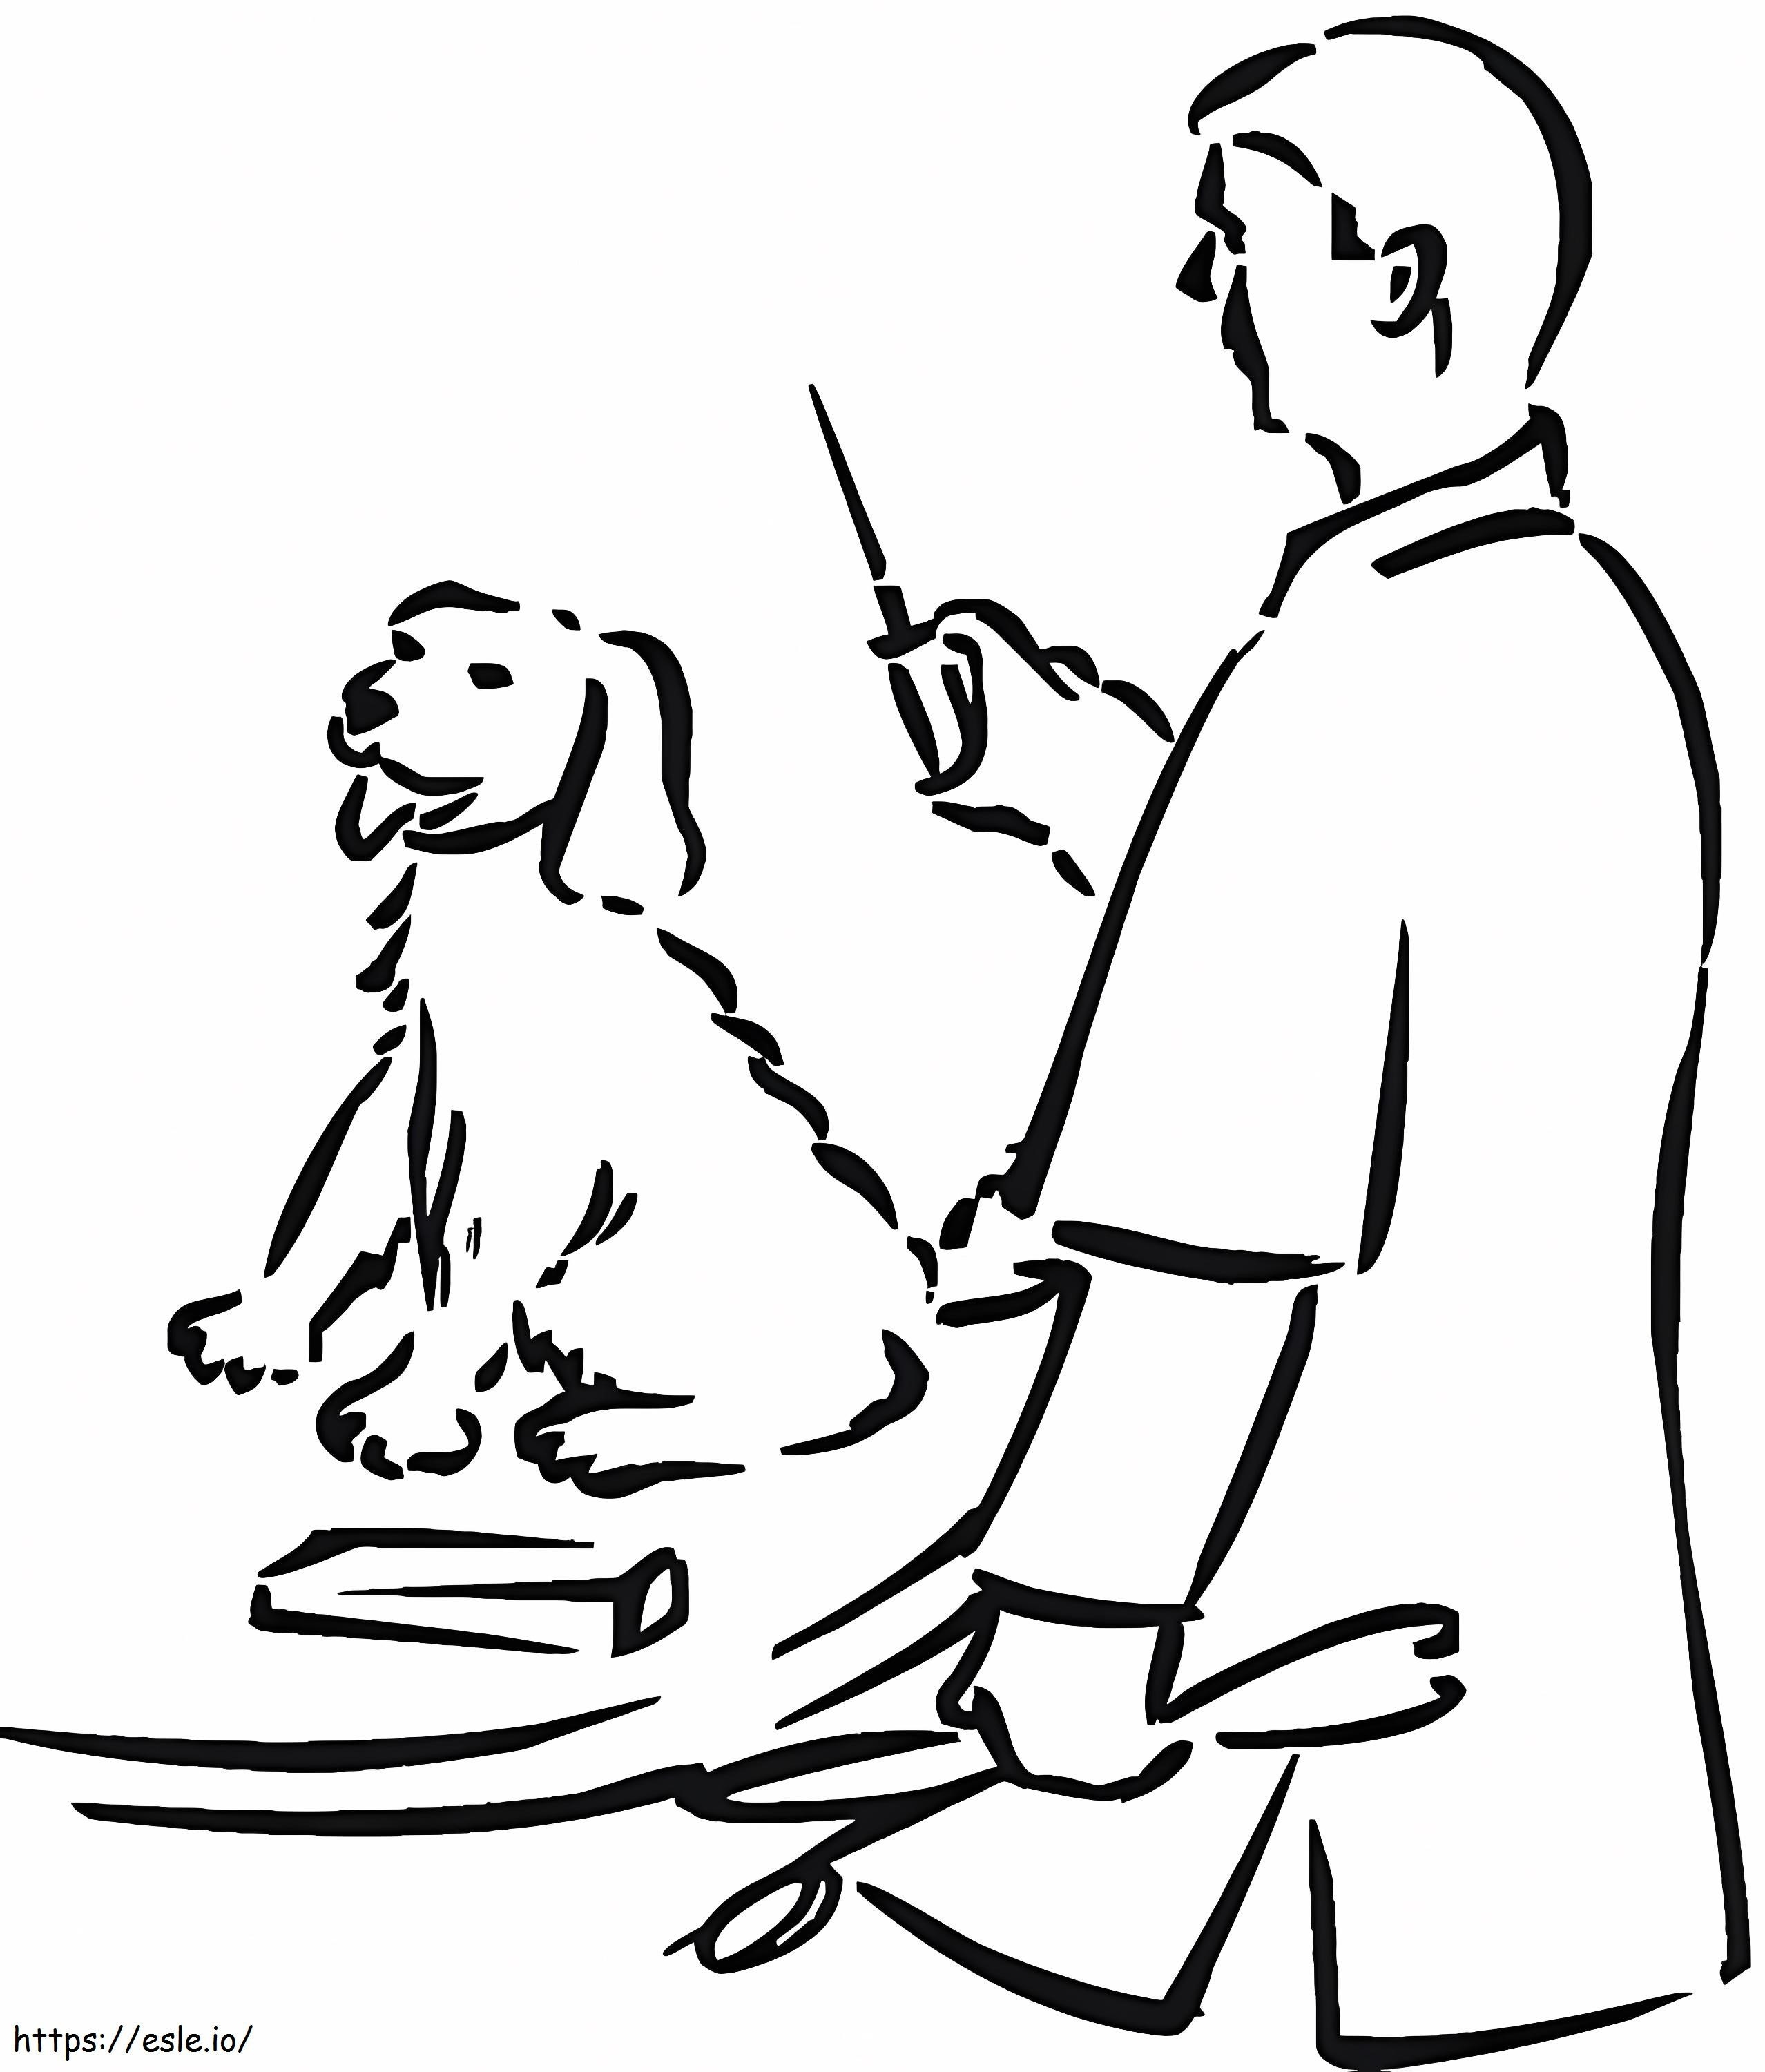 Tierarzt, Mit, A, Dog ausmalbilder